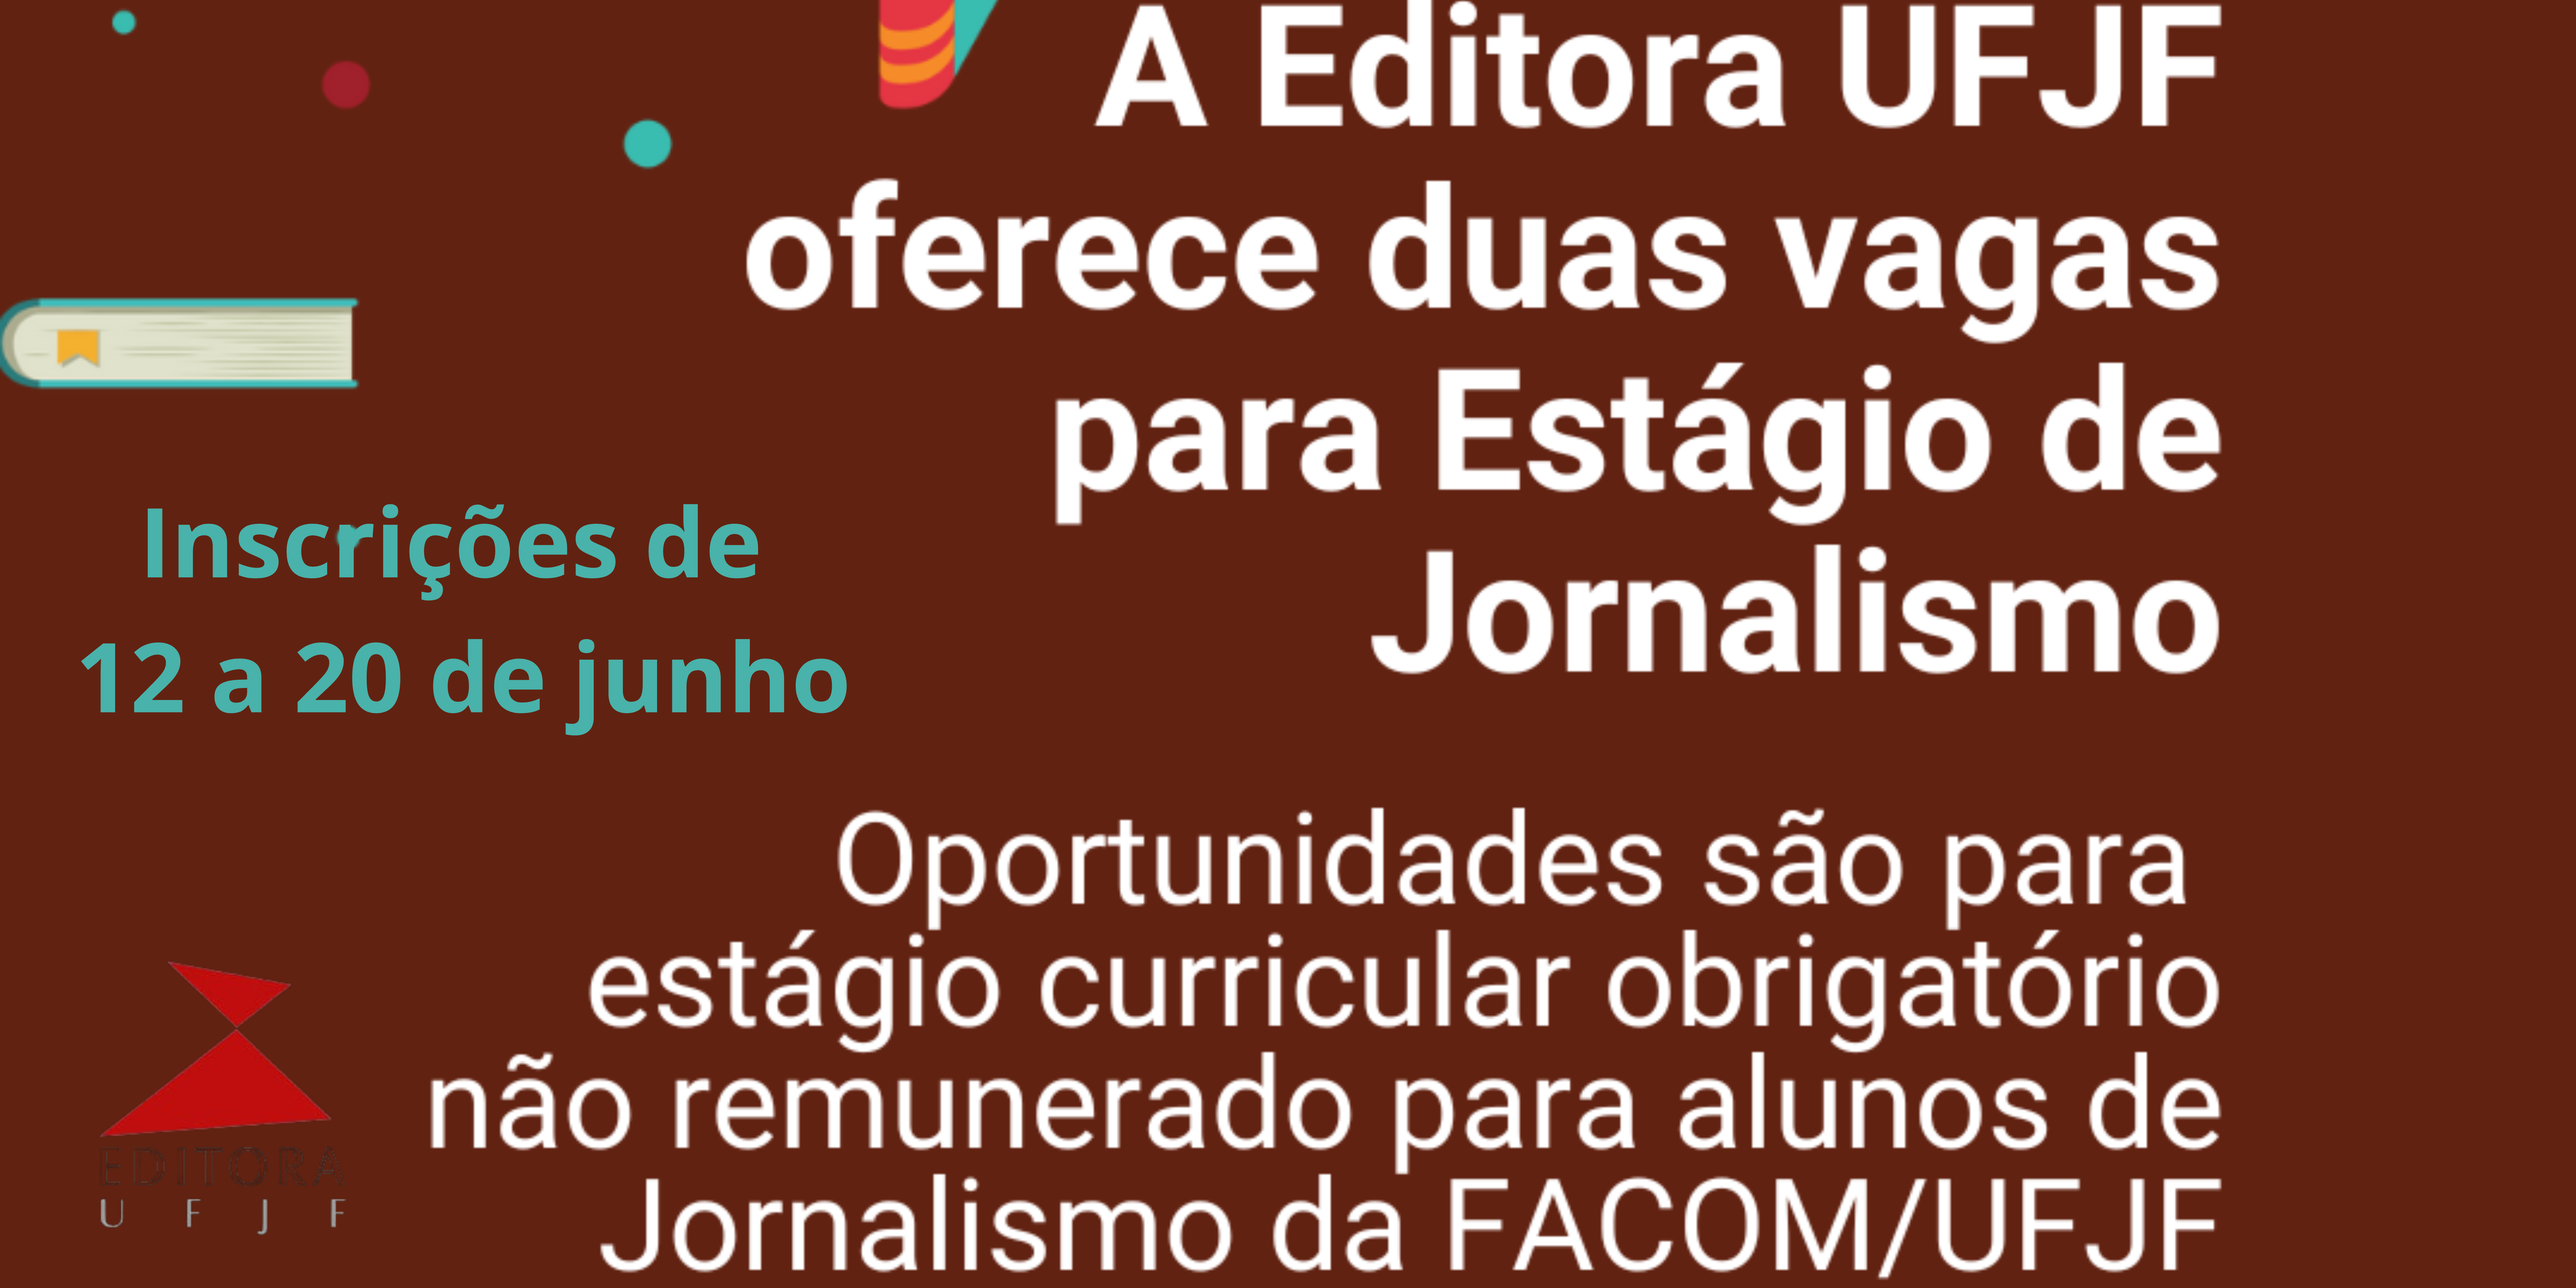 Editora UFJF abre vagas para Estágio obrigatório em Jornalismo